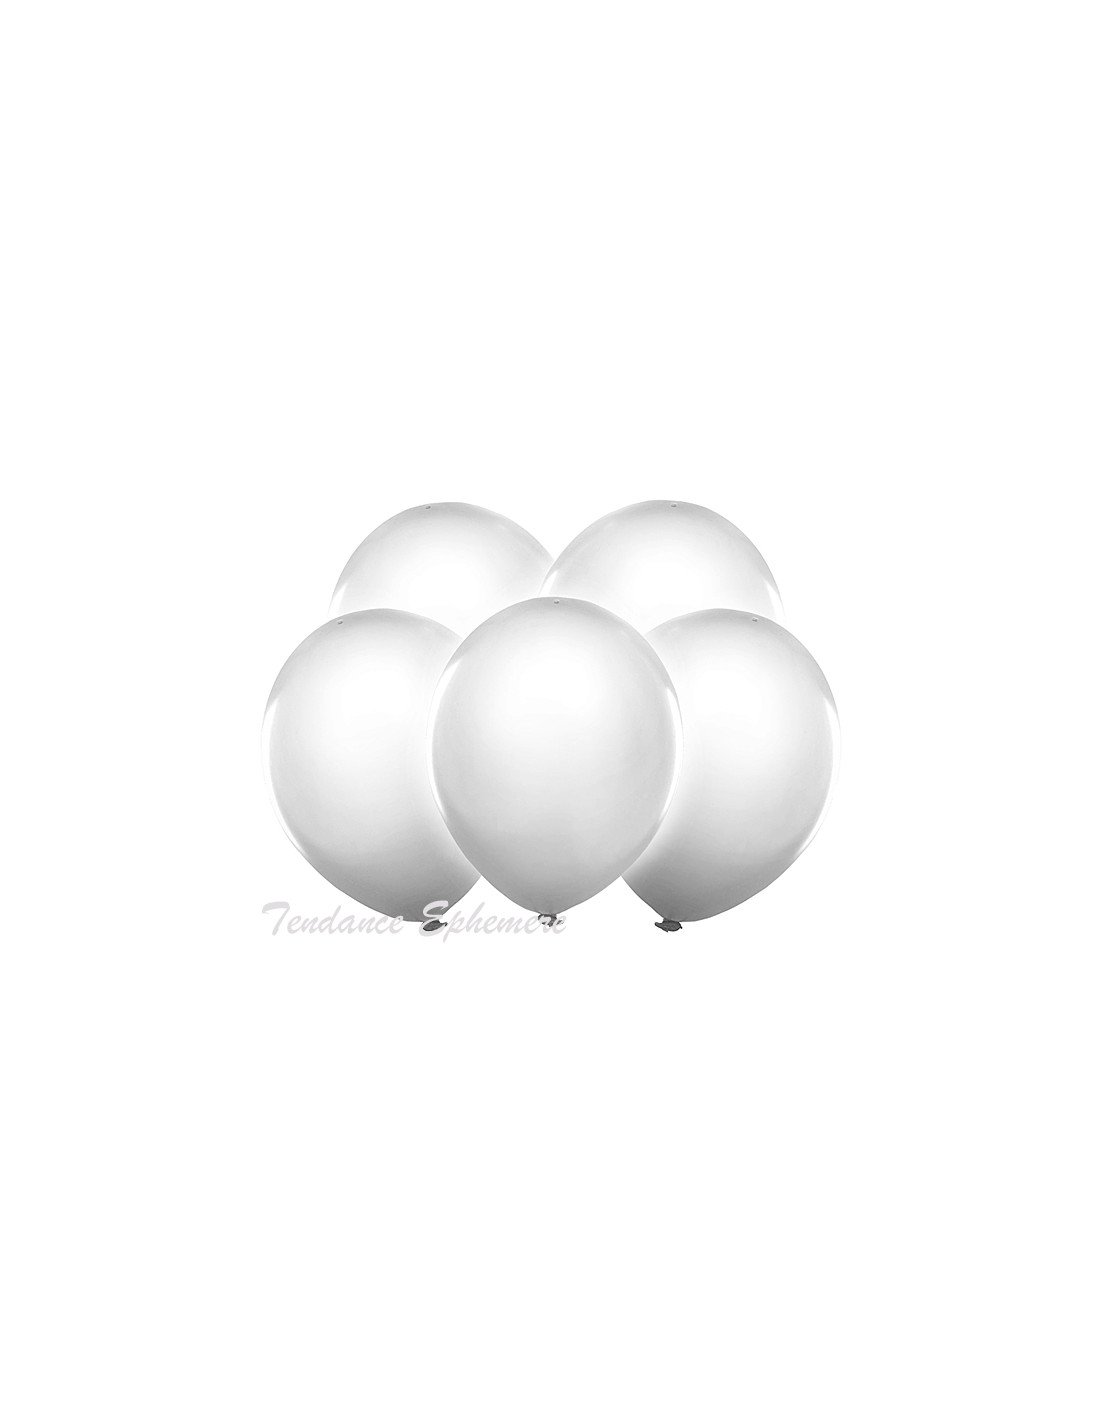 DEL-lumière ballons 5st. blanc 30 cm PD bl12-2-008